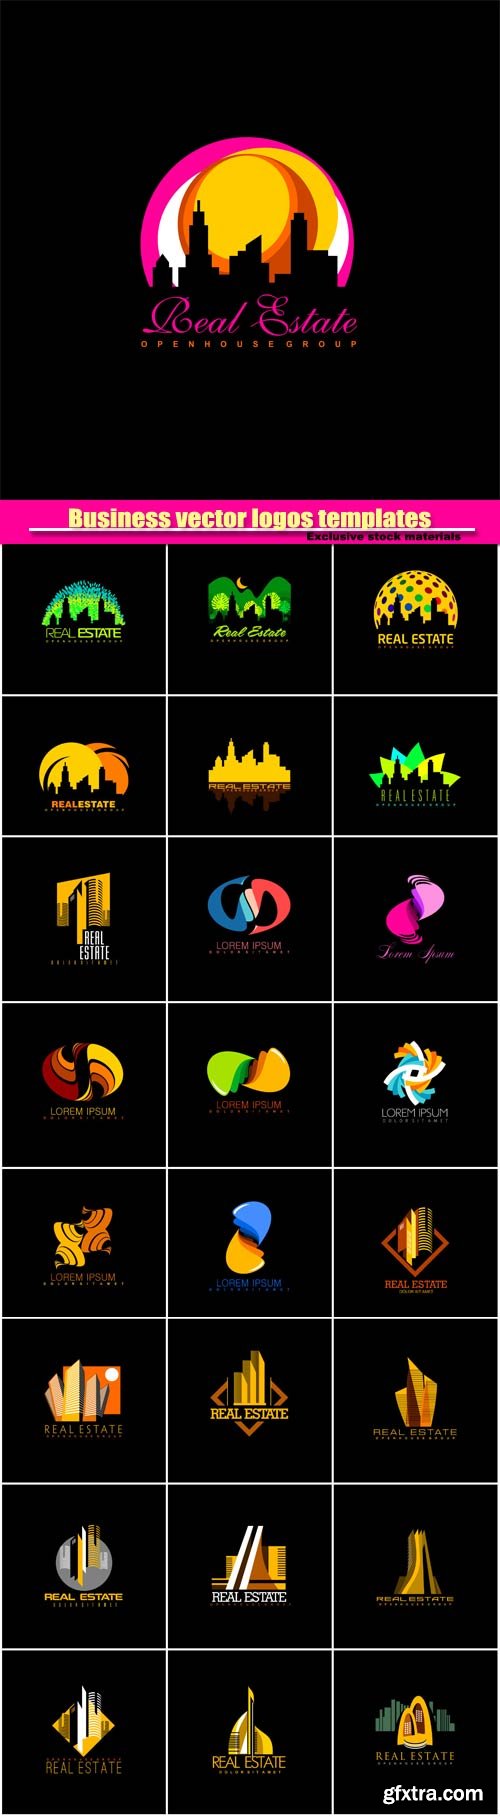 Business vector logos templates, creative figure icon #6